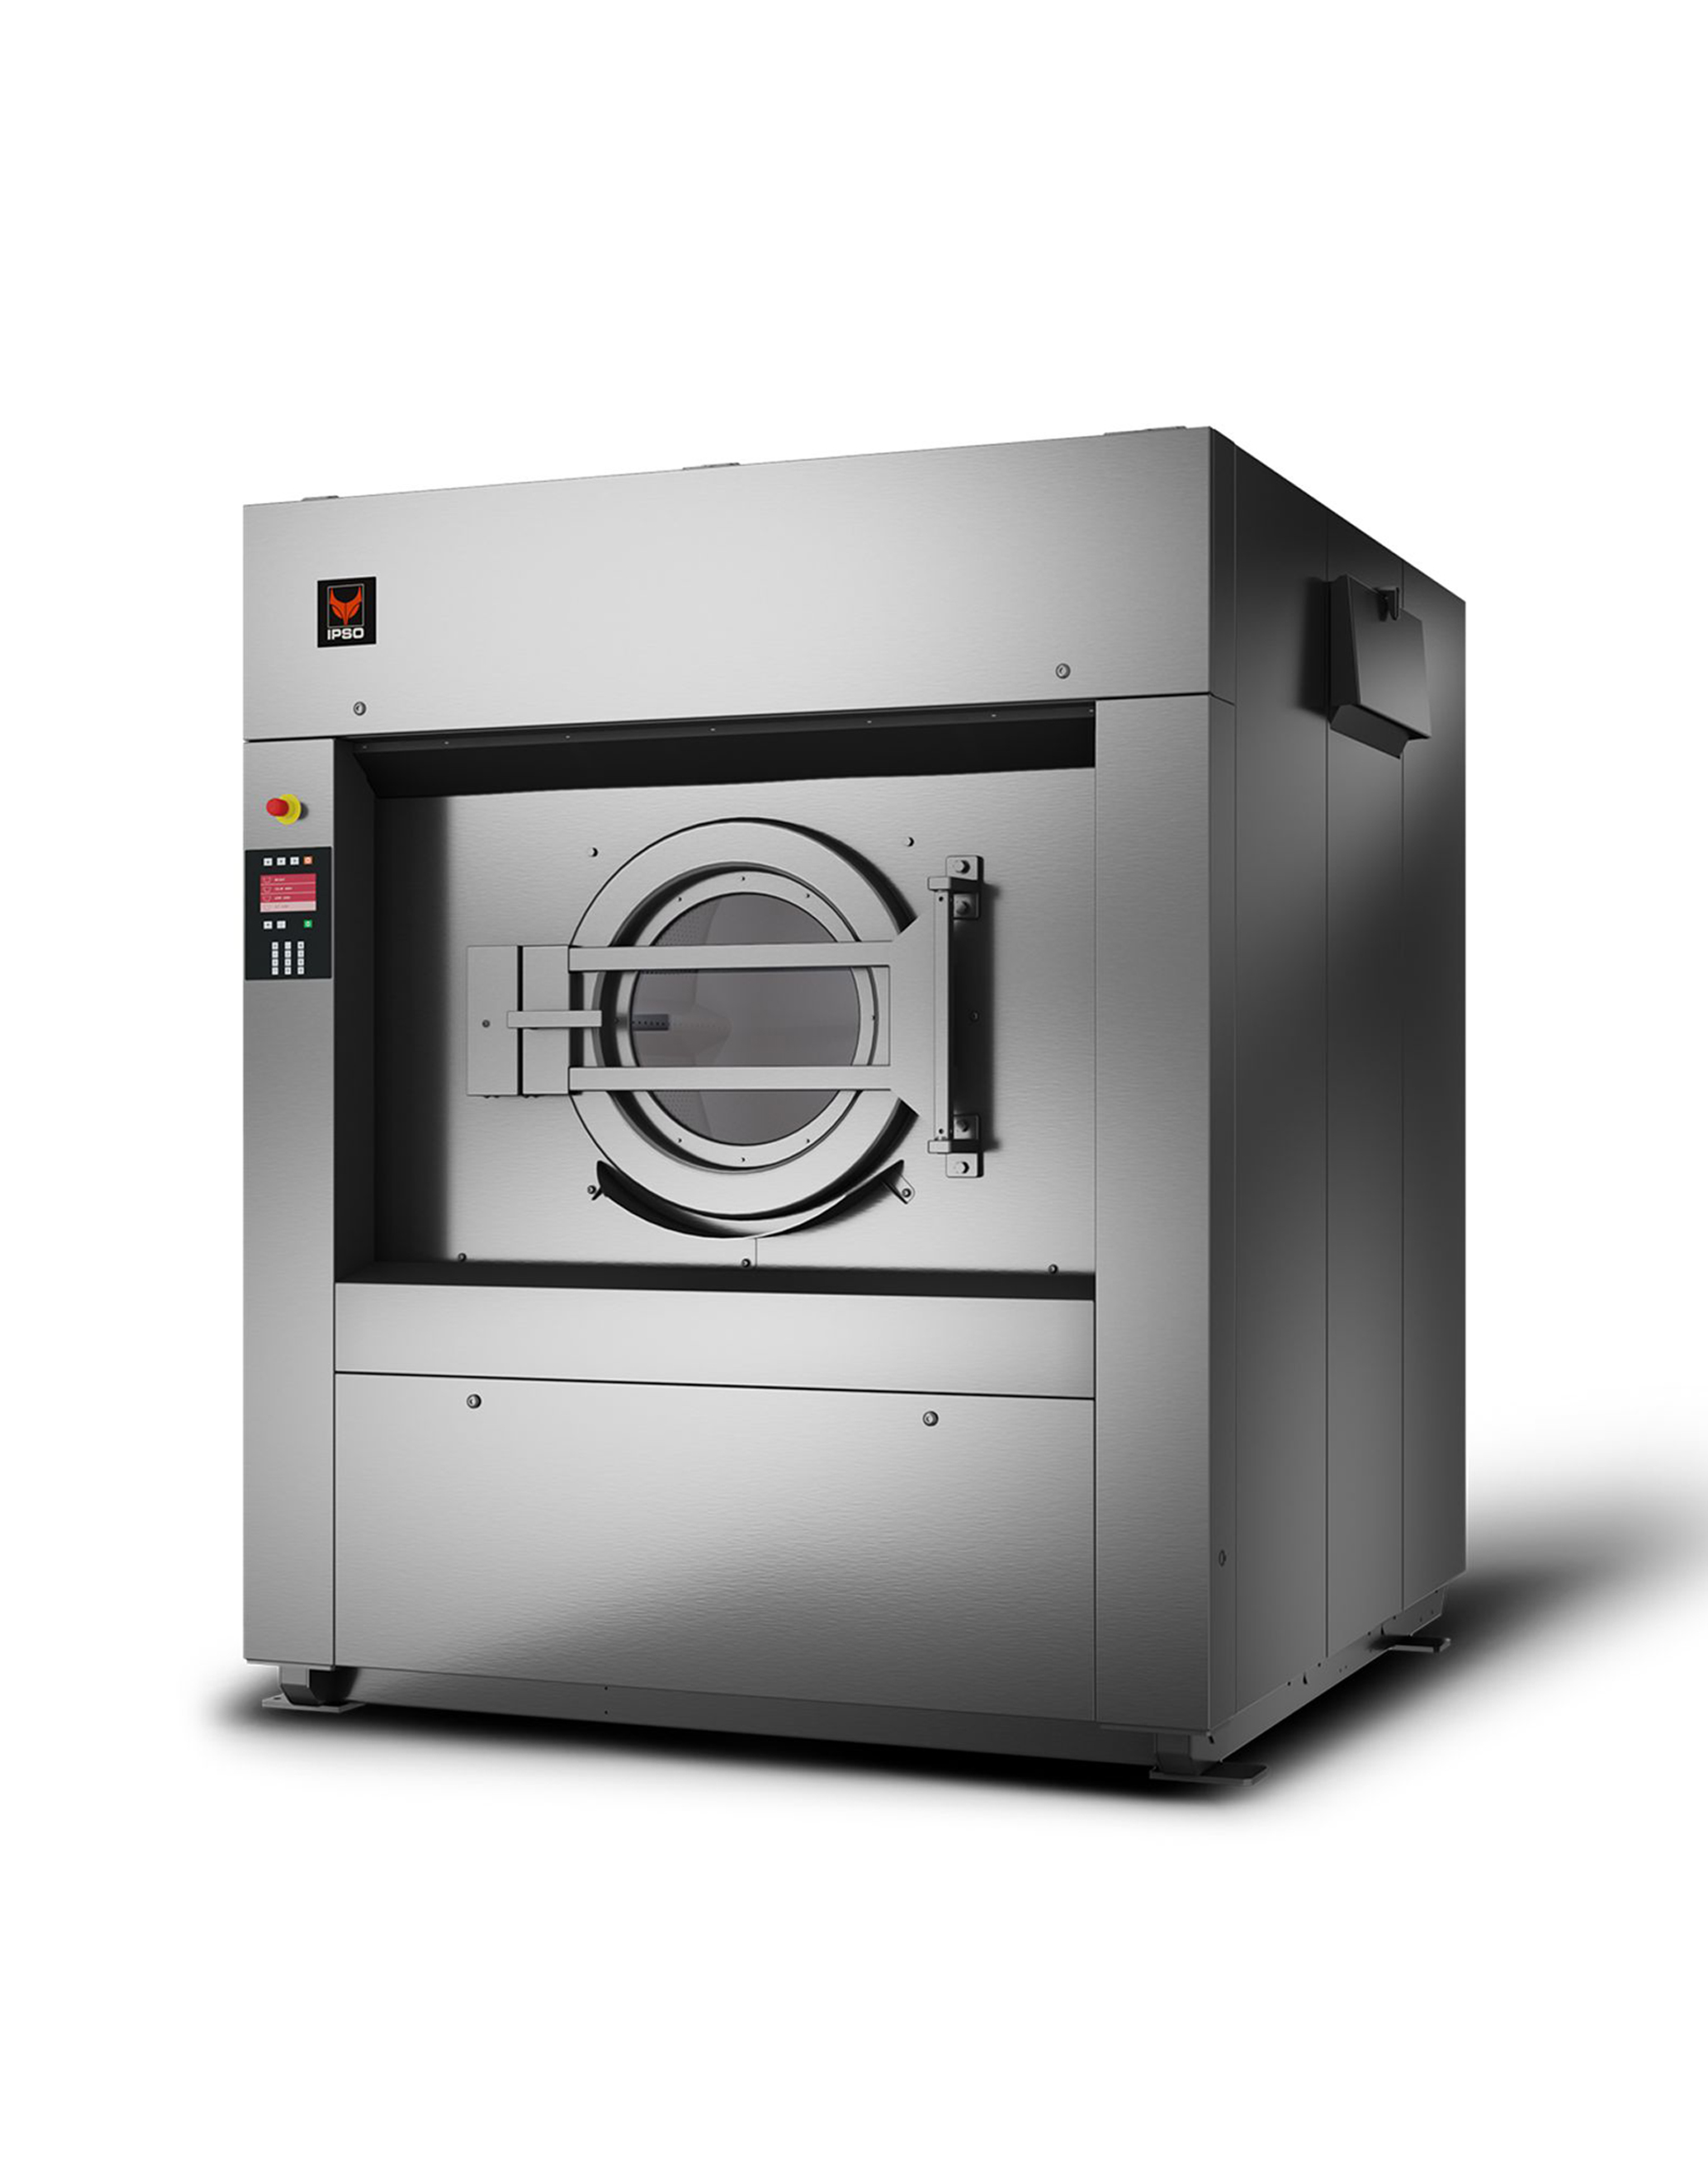 IY800-rechts-industriele-wasmachine-machine-à-laver-industriel-800-kilo-kg-industrial